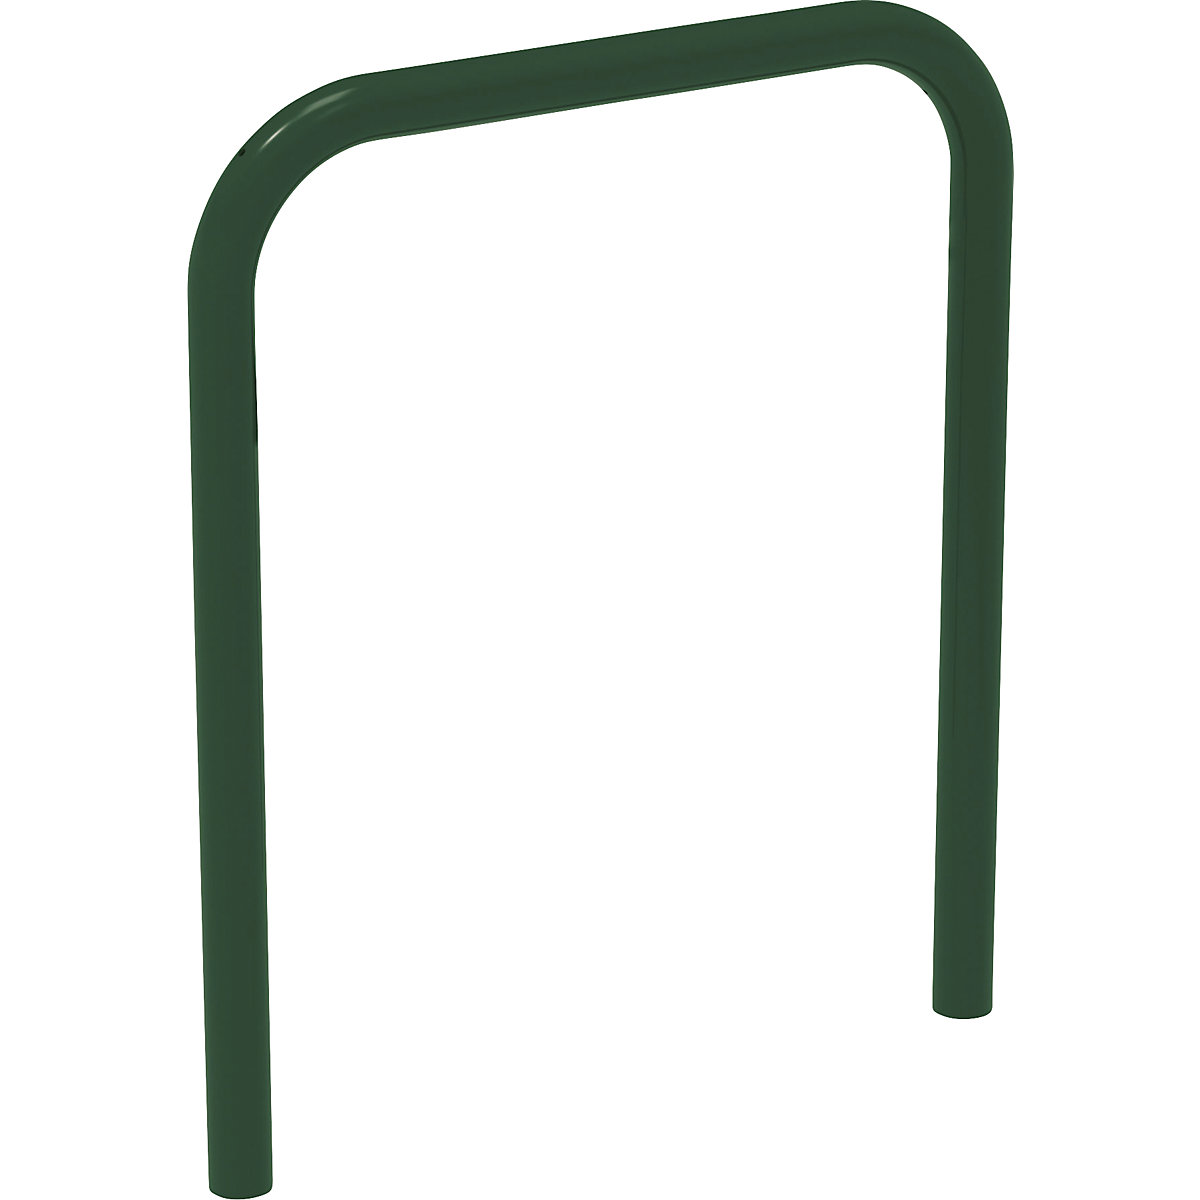 Arco de apoyo para bicicletas – PROCITY, para encementar, verde musgo-1